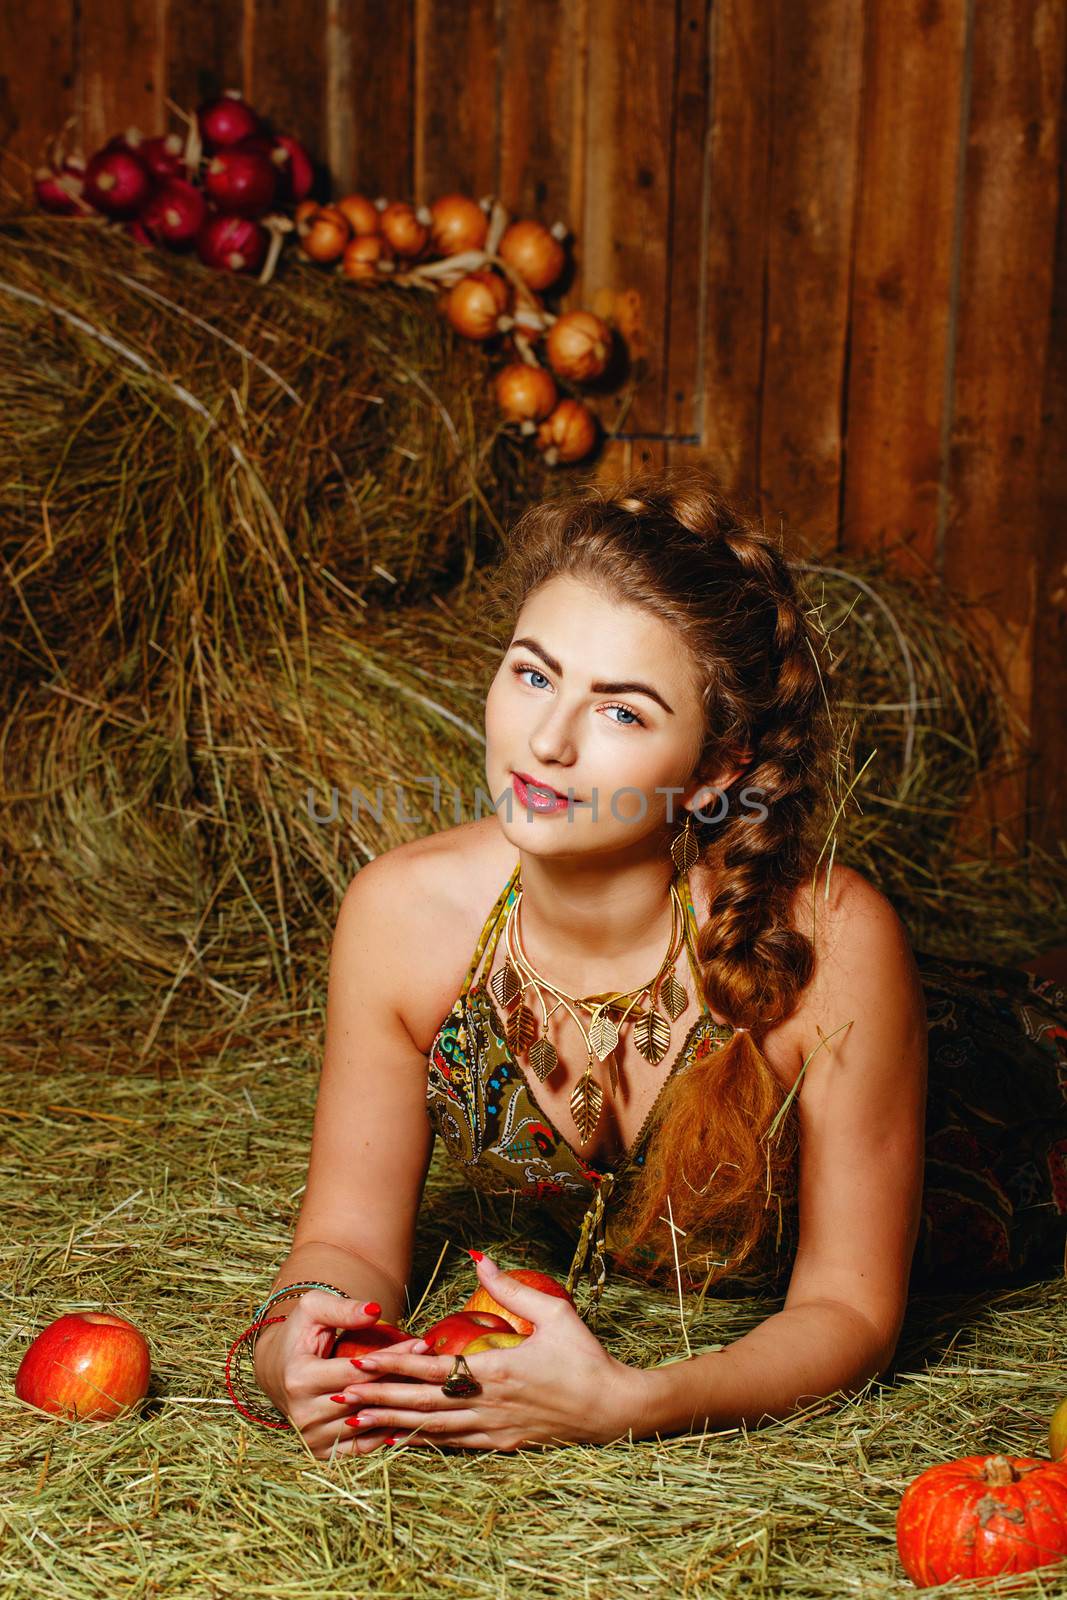 Girl in hayloft by Vagengeym